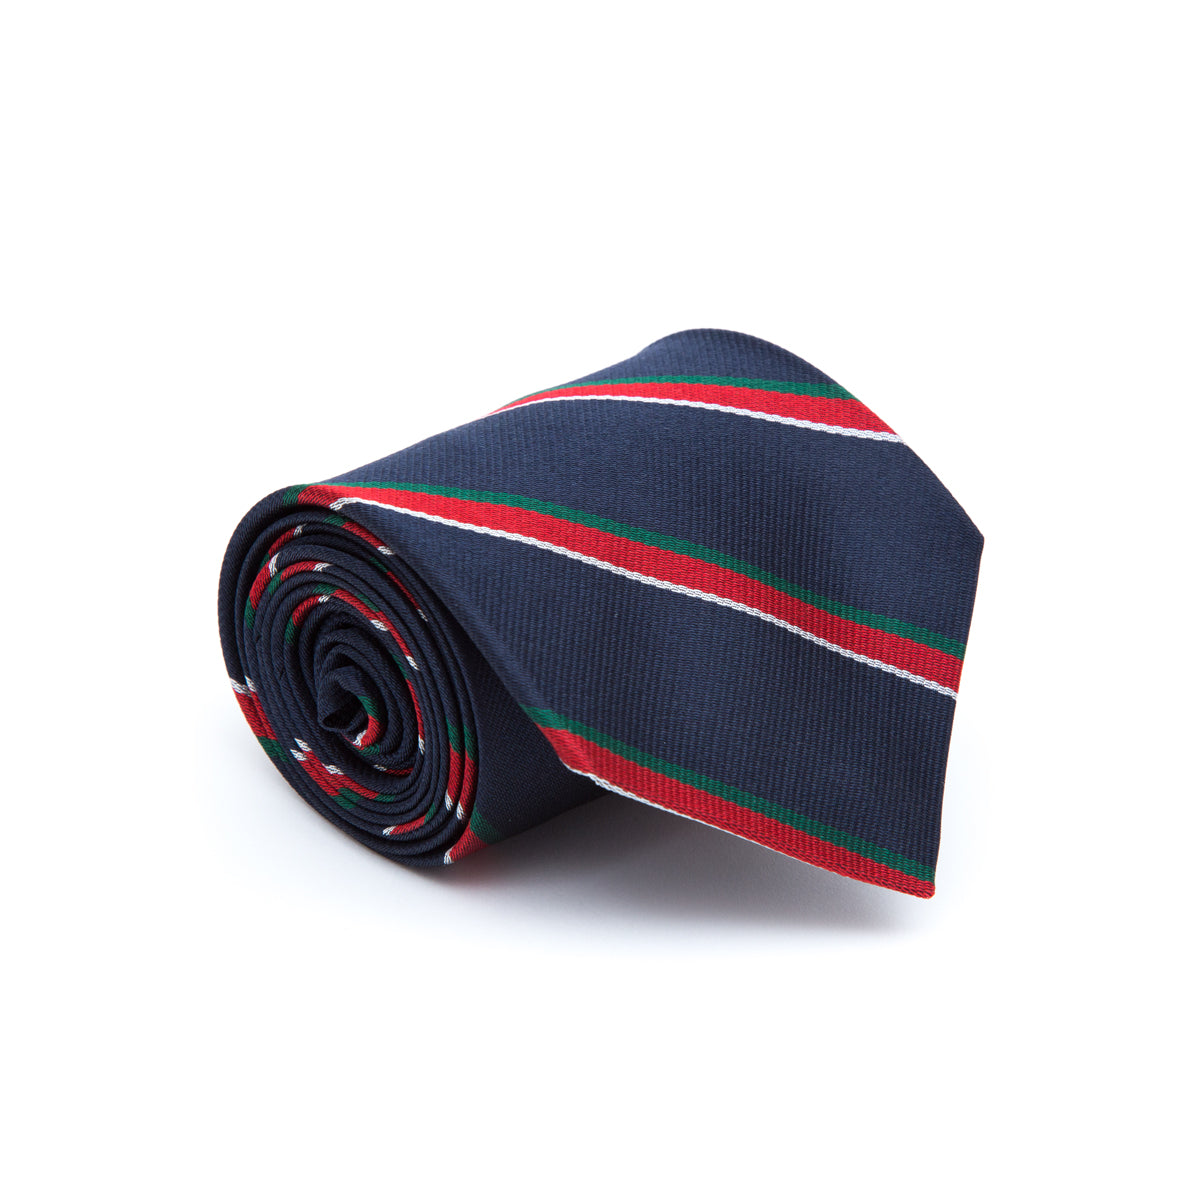 Club striped tie